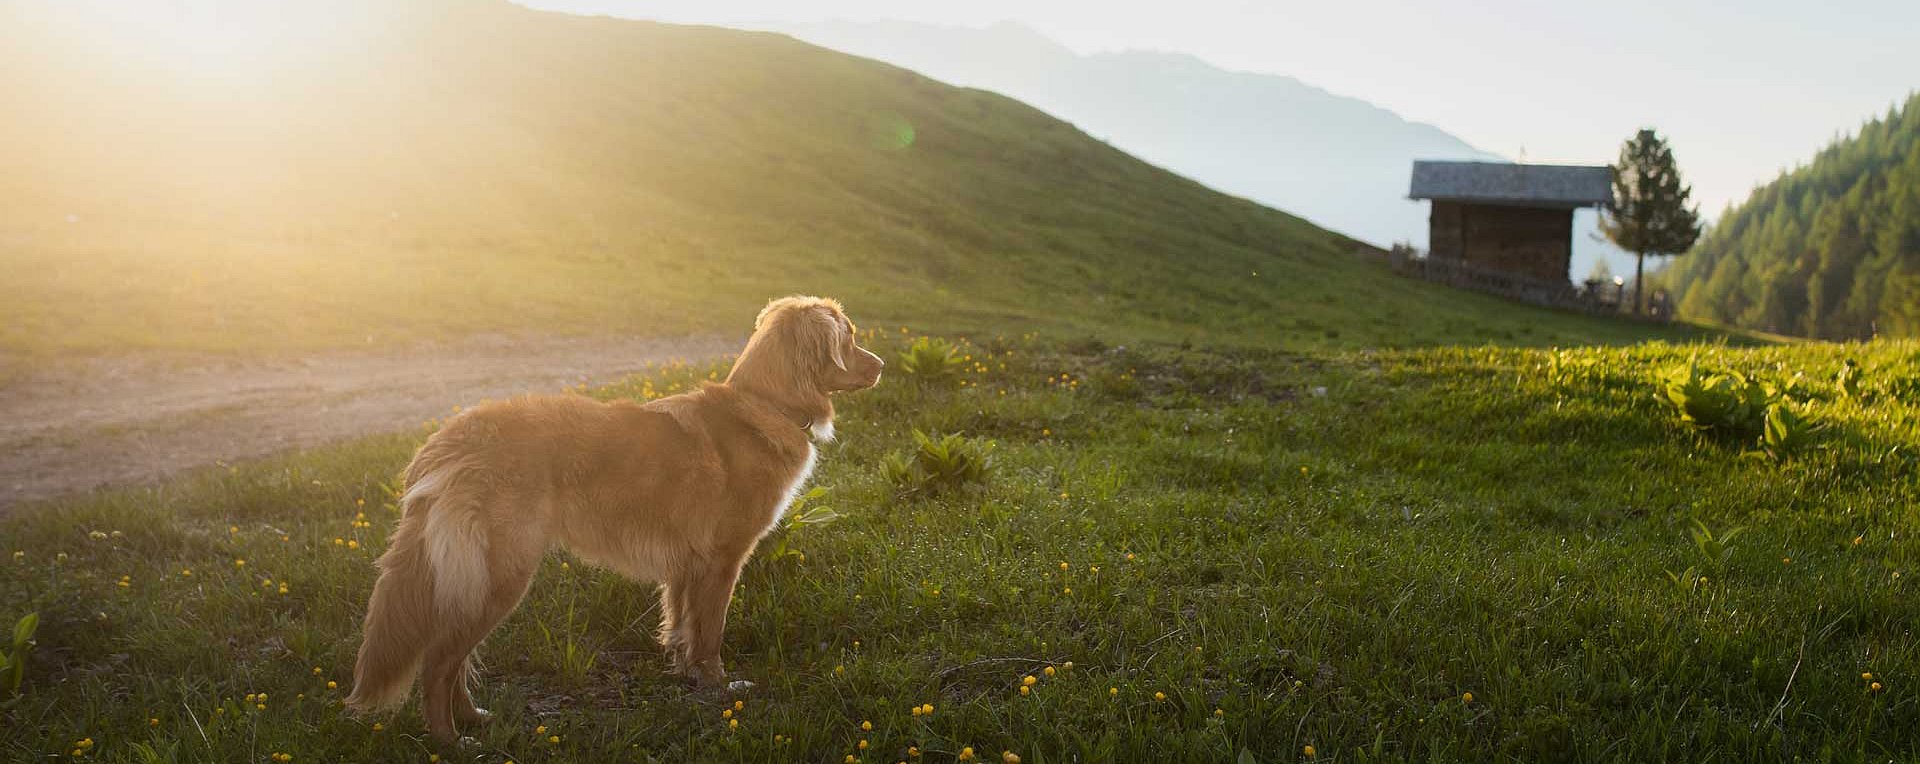 Hund vor Sonnenuntergang